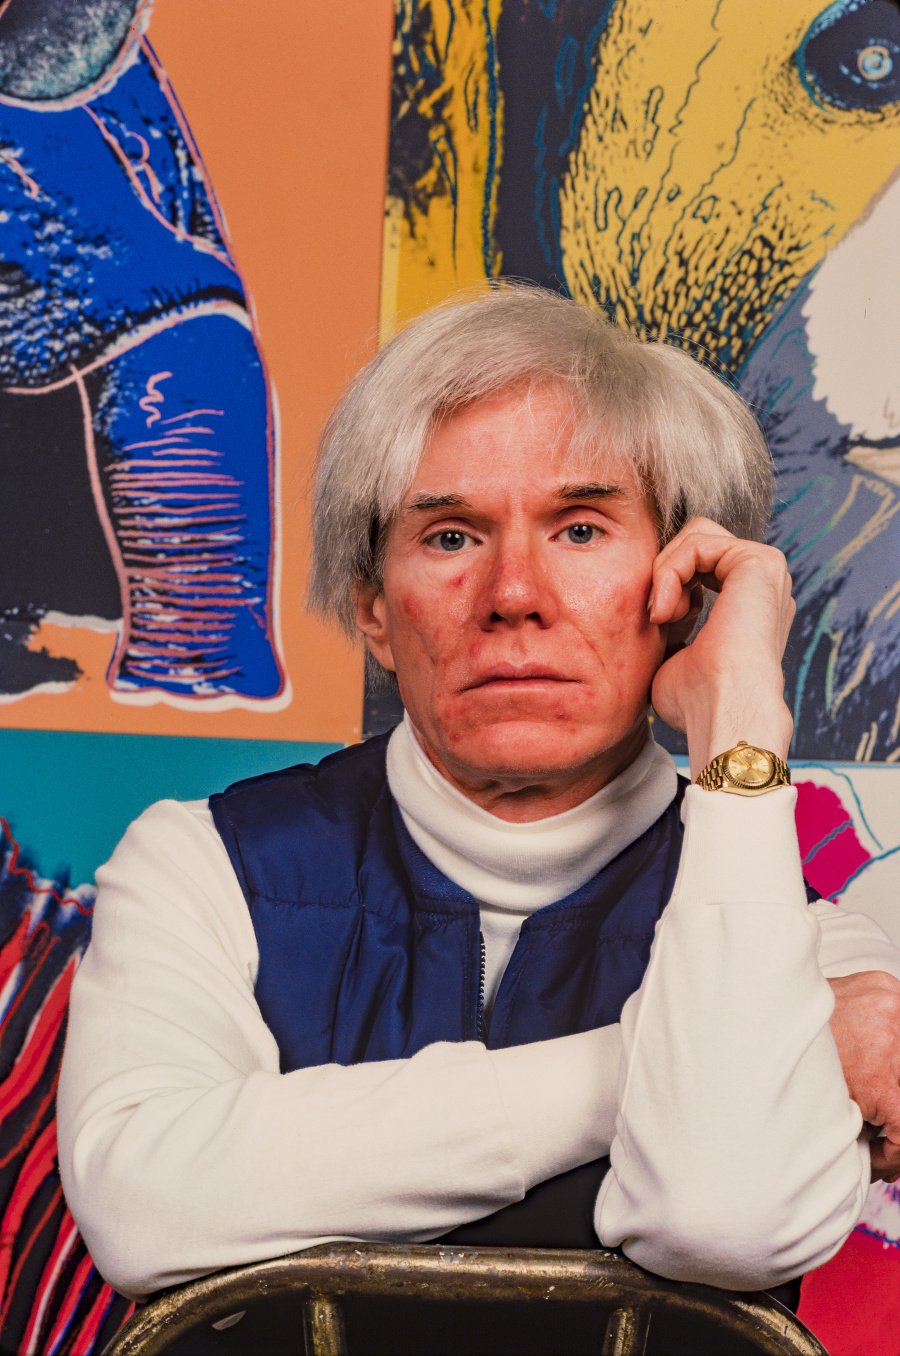 Andy Warhol sa narodil